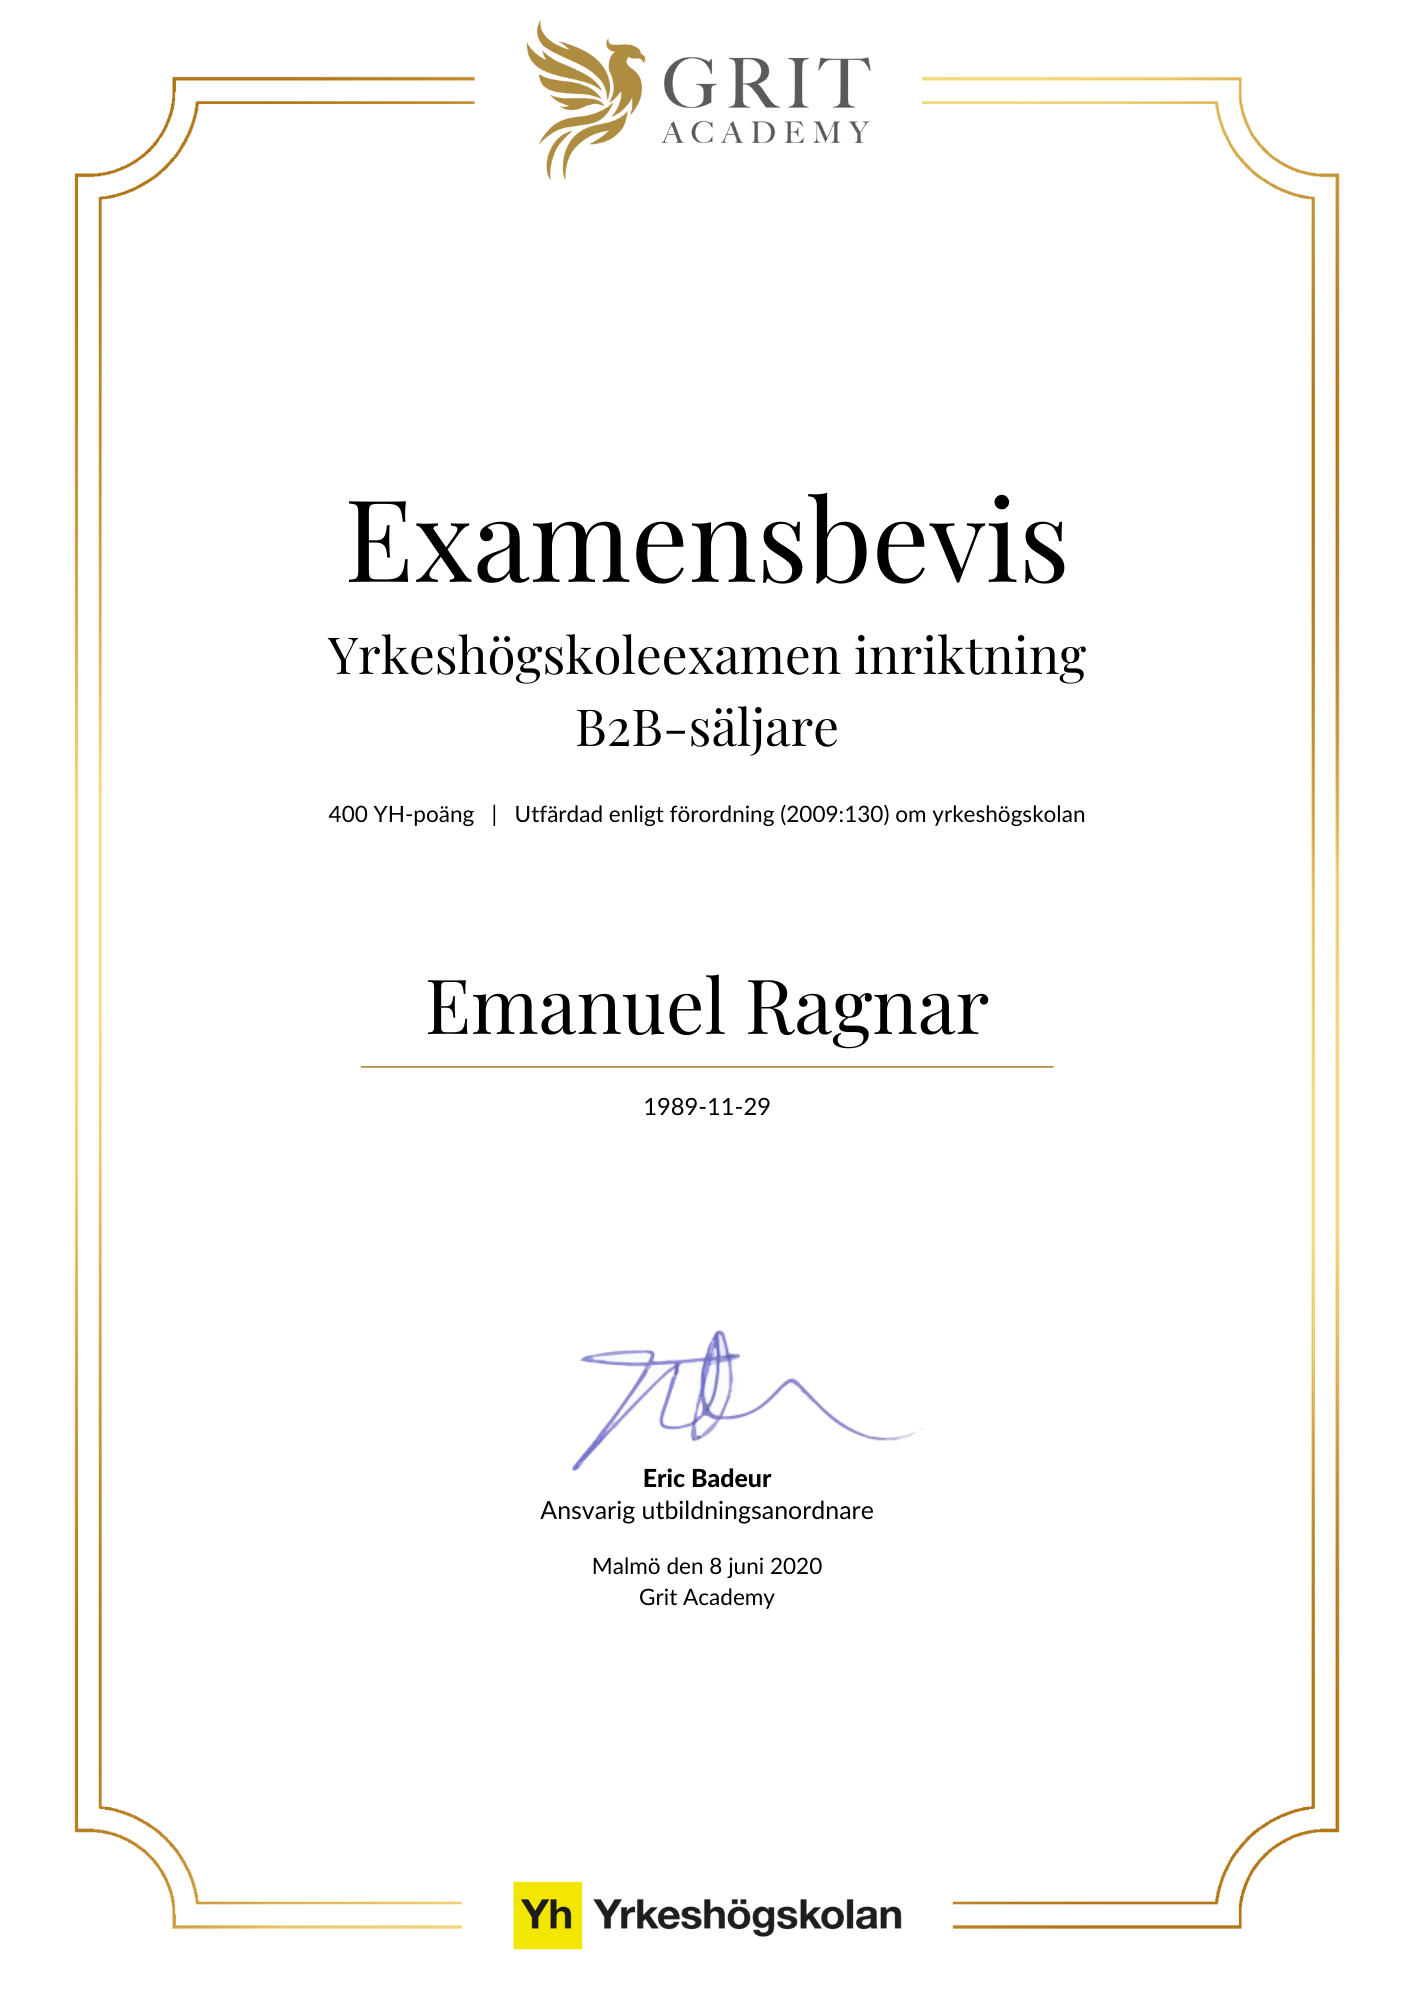 Examensbevis Emanuel Ragnar - 1